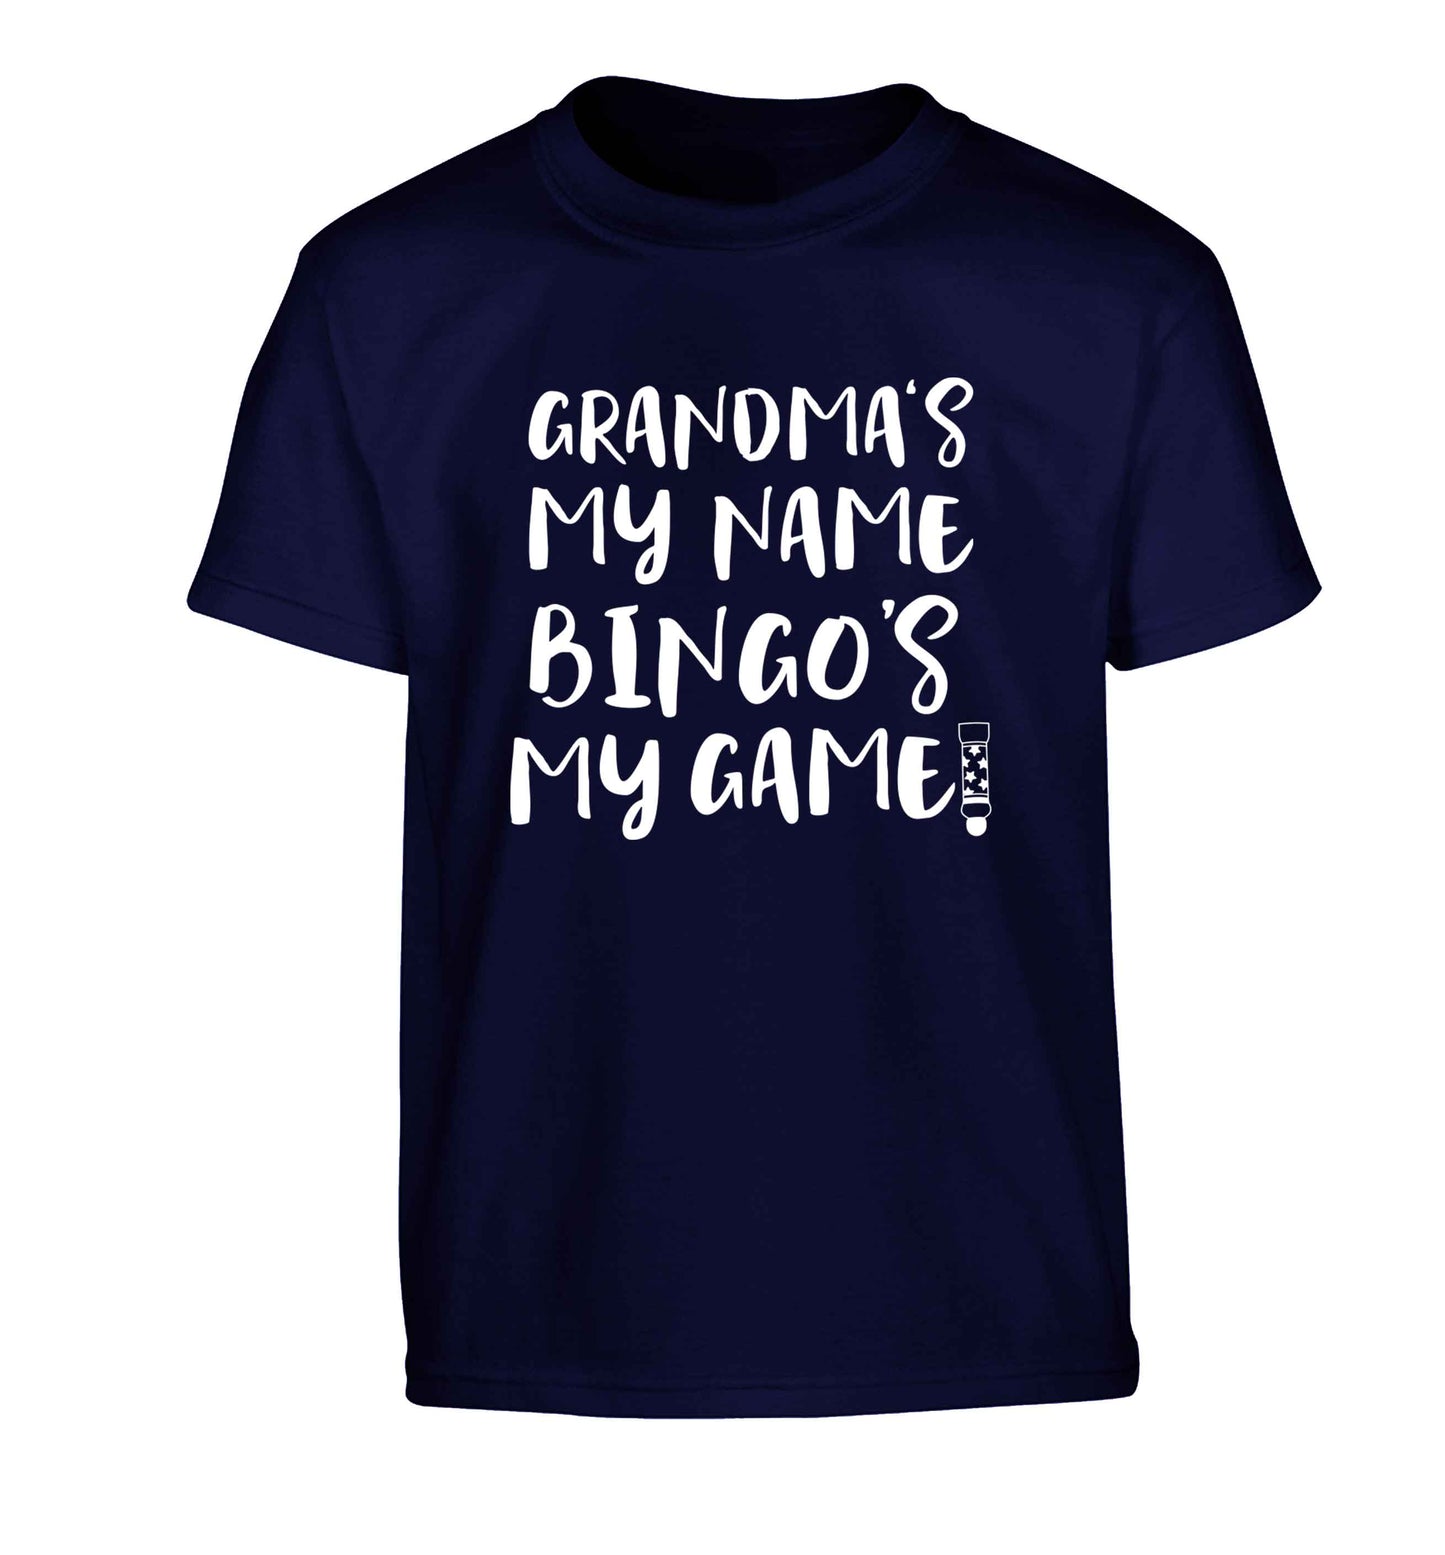 Grandma's my name bingo's my game! Children's navy Tshirt 12-13 Years